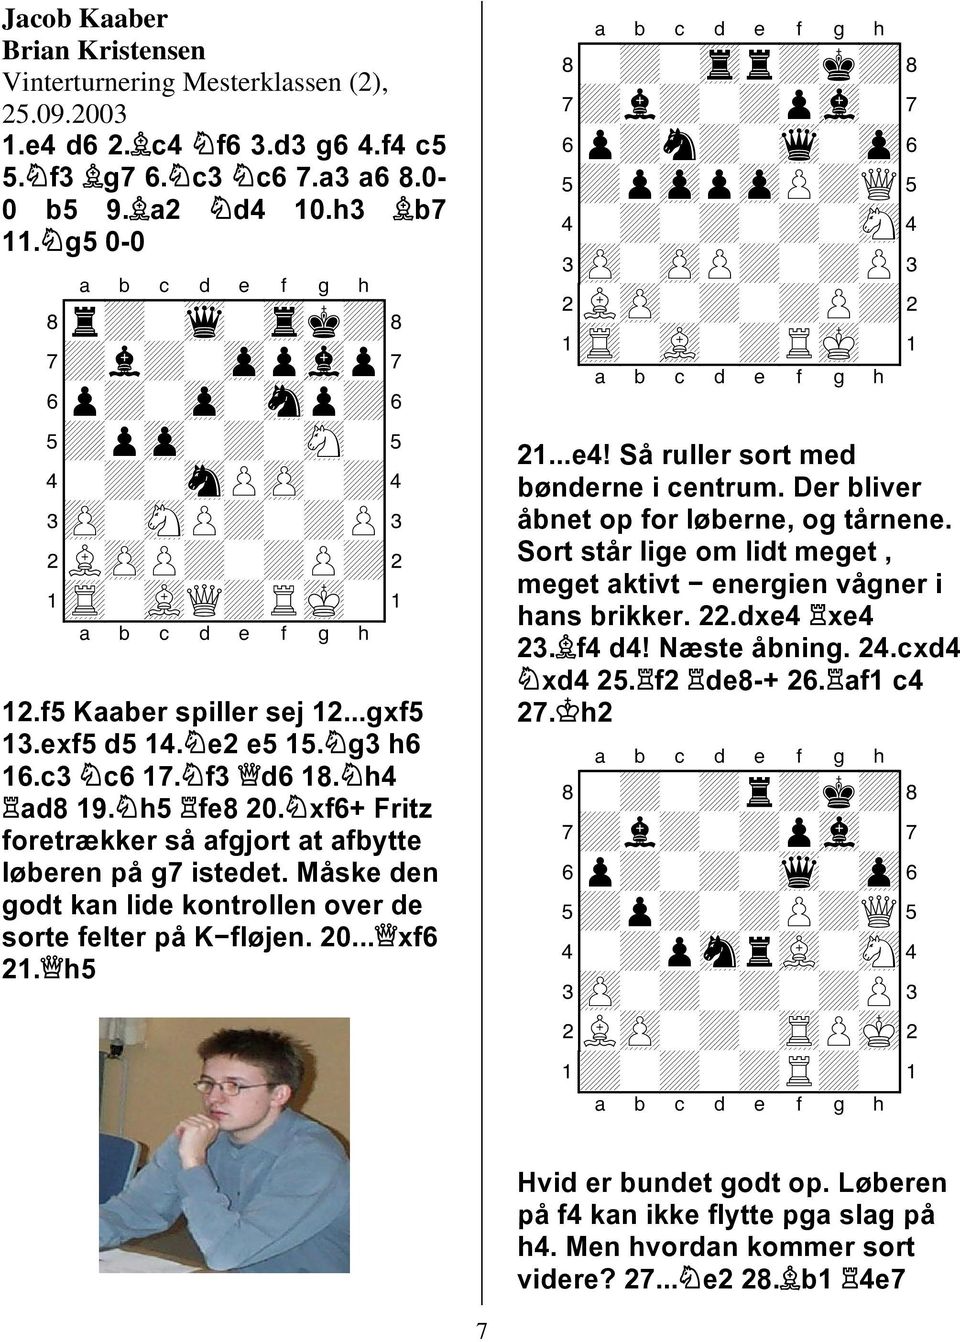 h5 fe8 2. xf6+ Fritz foretrækker så afgjort at afbytte løberen på g7 istedet. Måske den godt kan lide kontrollen over de sorte felter på K fløjen. 2... xf6 2.